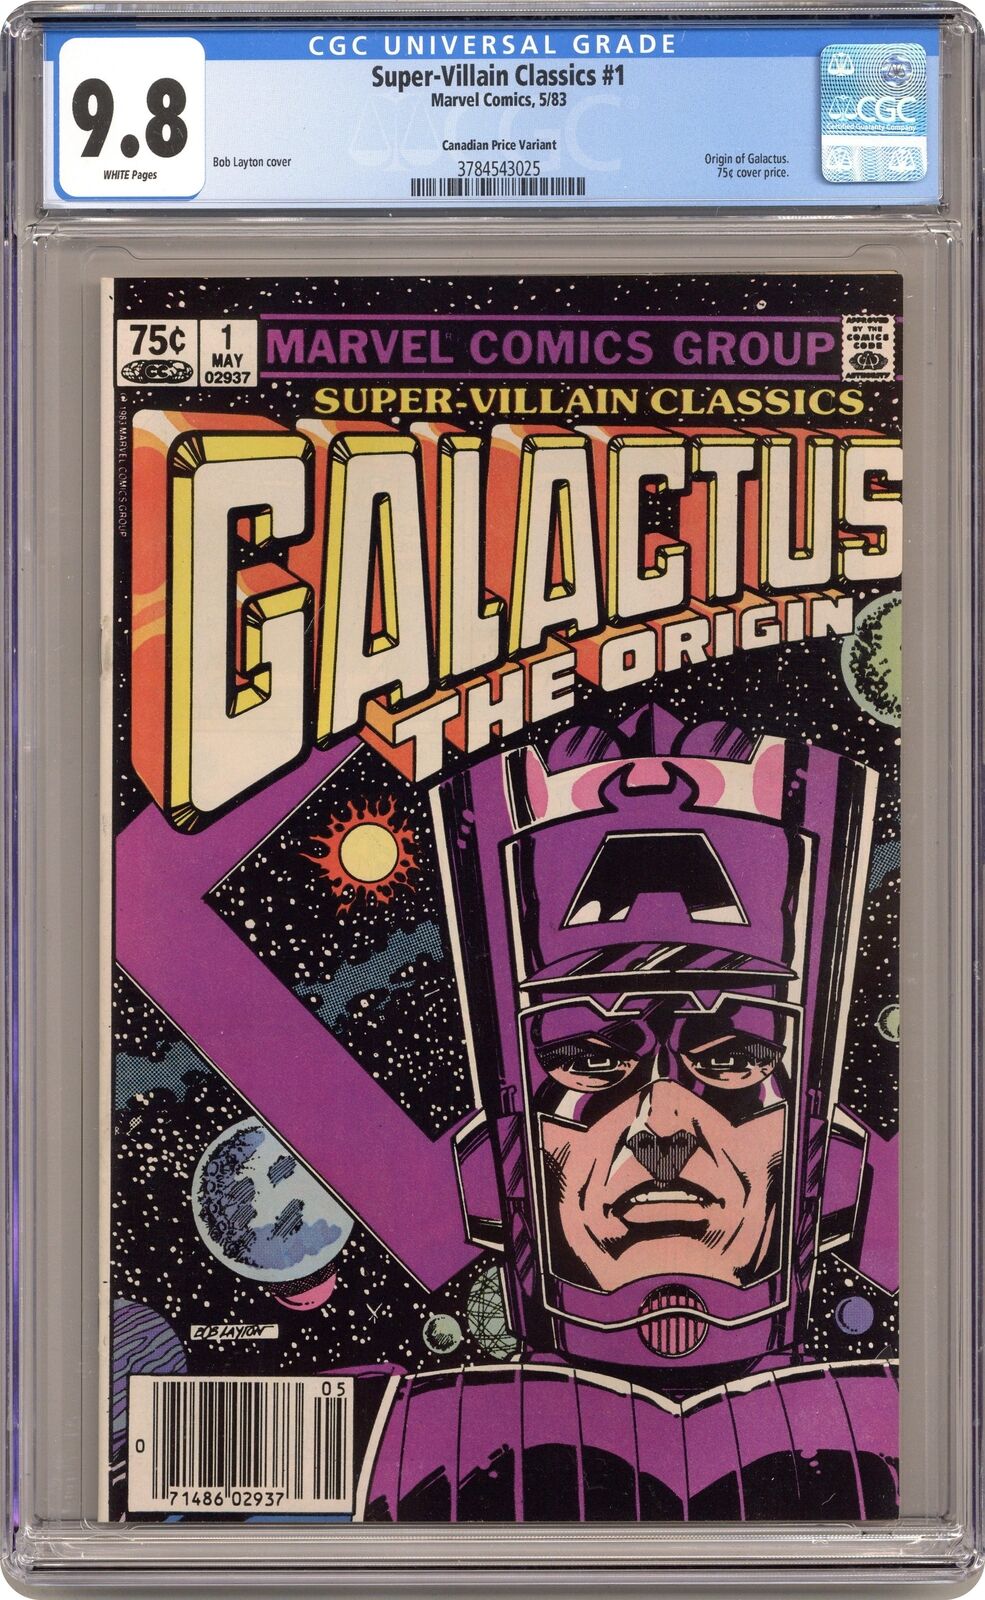 Super-Villain Classics Galactus the Origin Canadian Price #1 CGC 9.8 1983